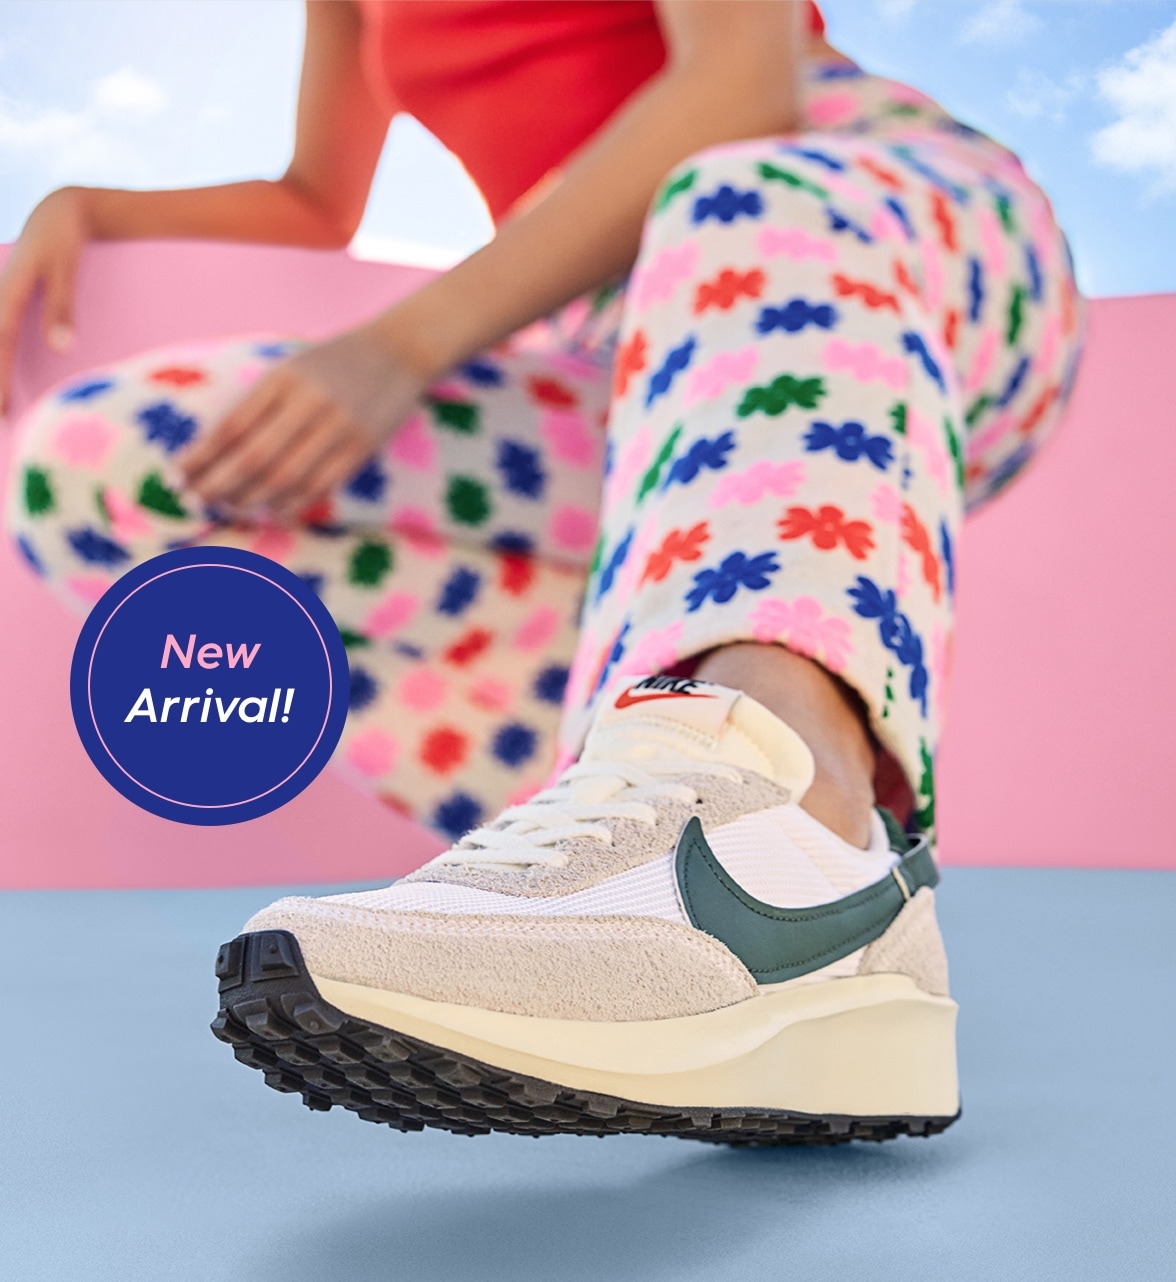 new arrival! legs of woman in floral pants wearing women's nike waffle debut retro sneaker